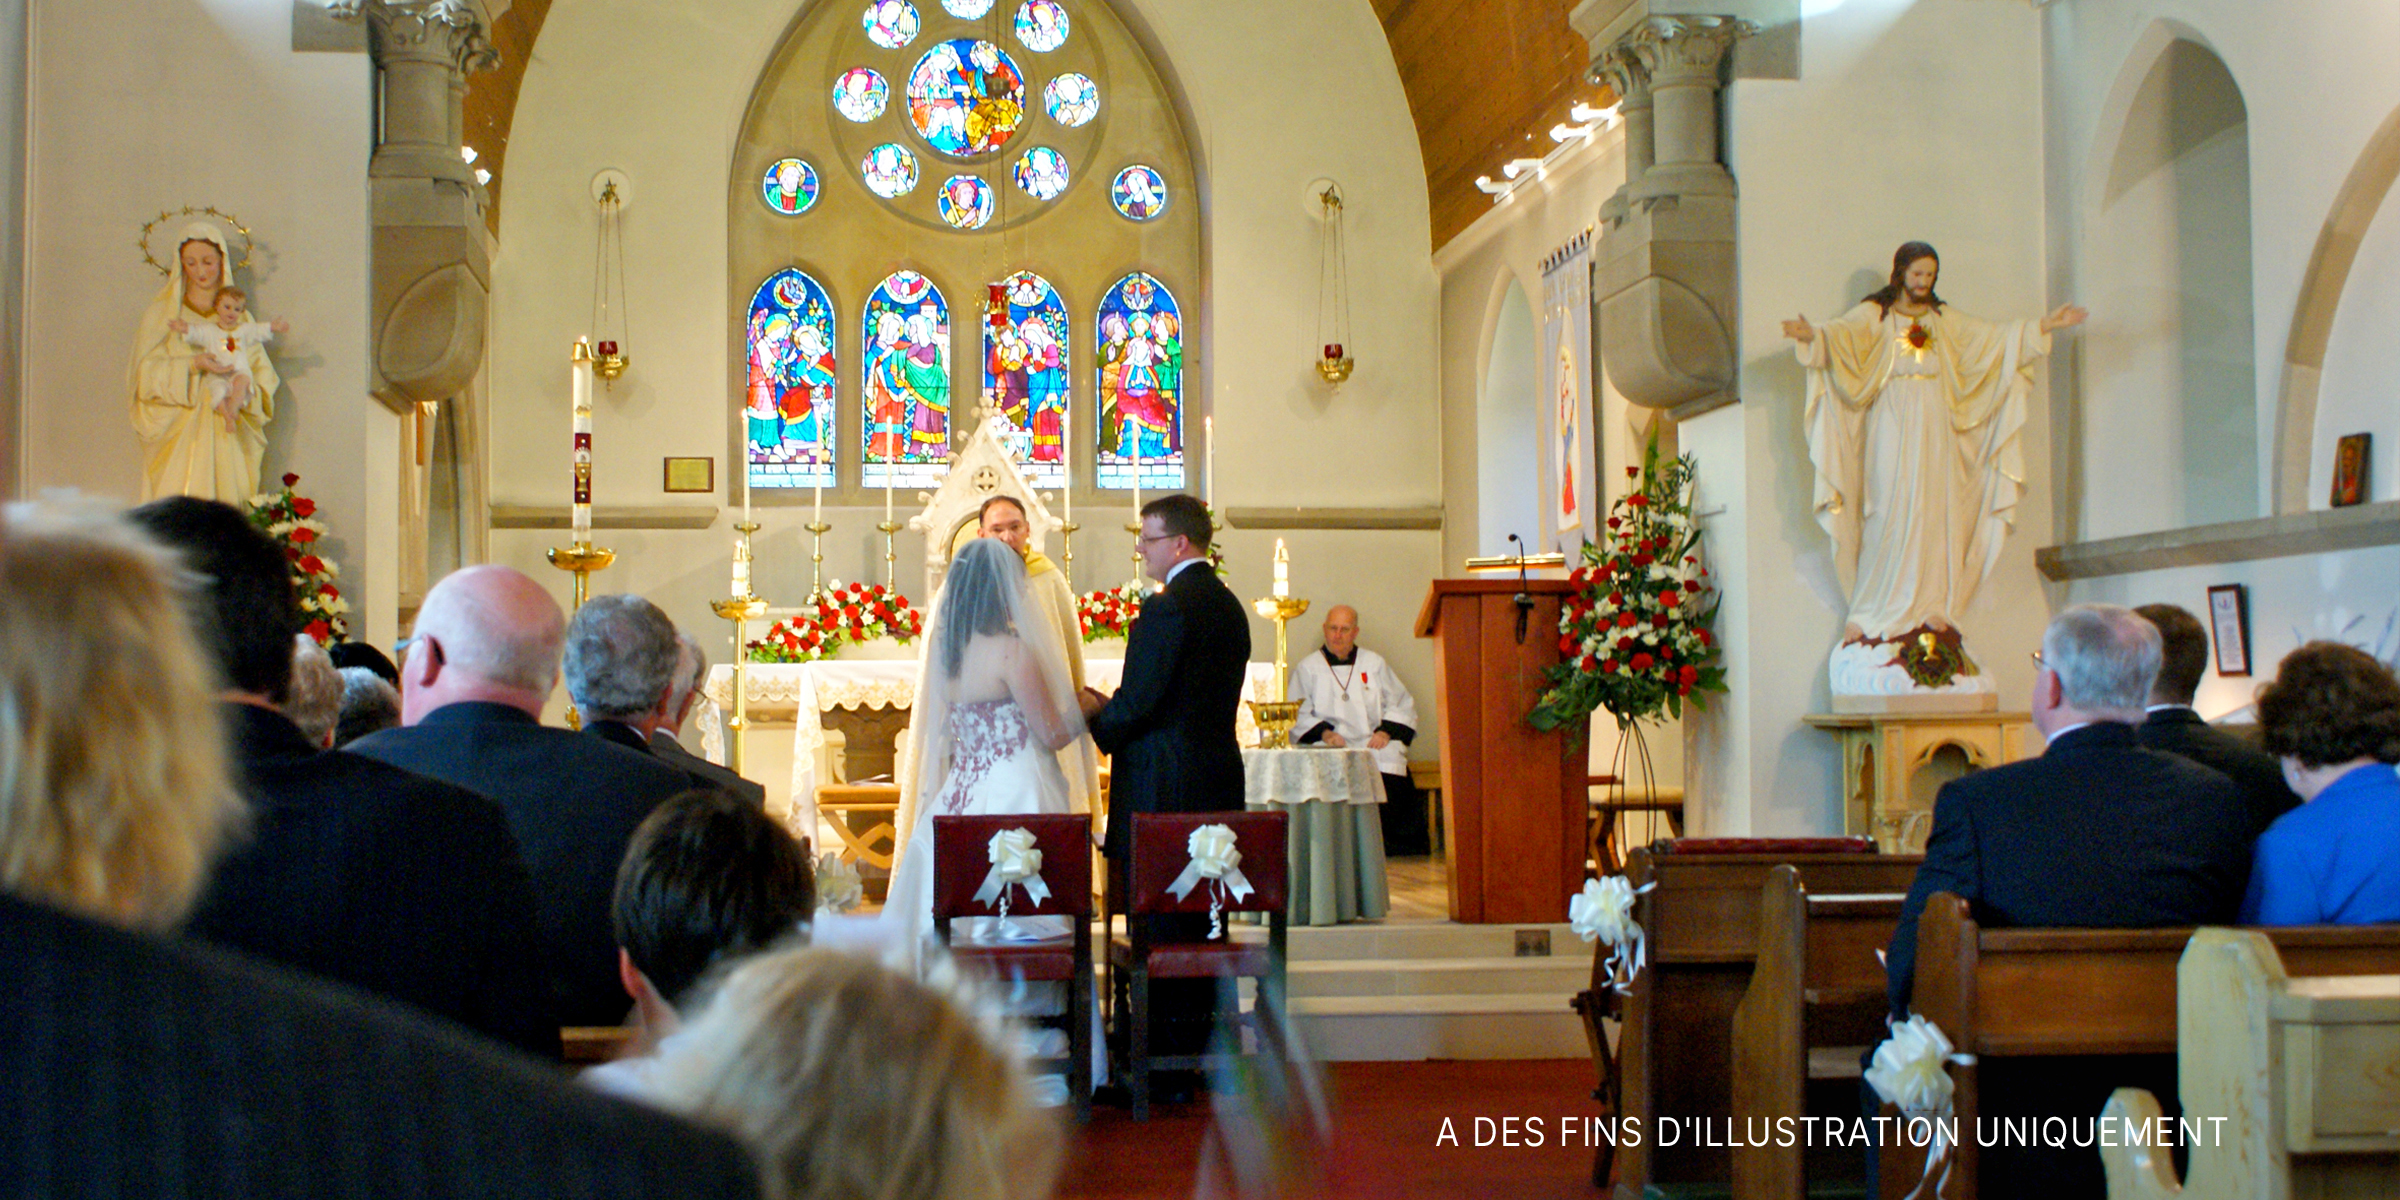 Couple à l'autel dans une église | Source : Flickr